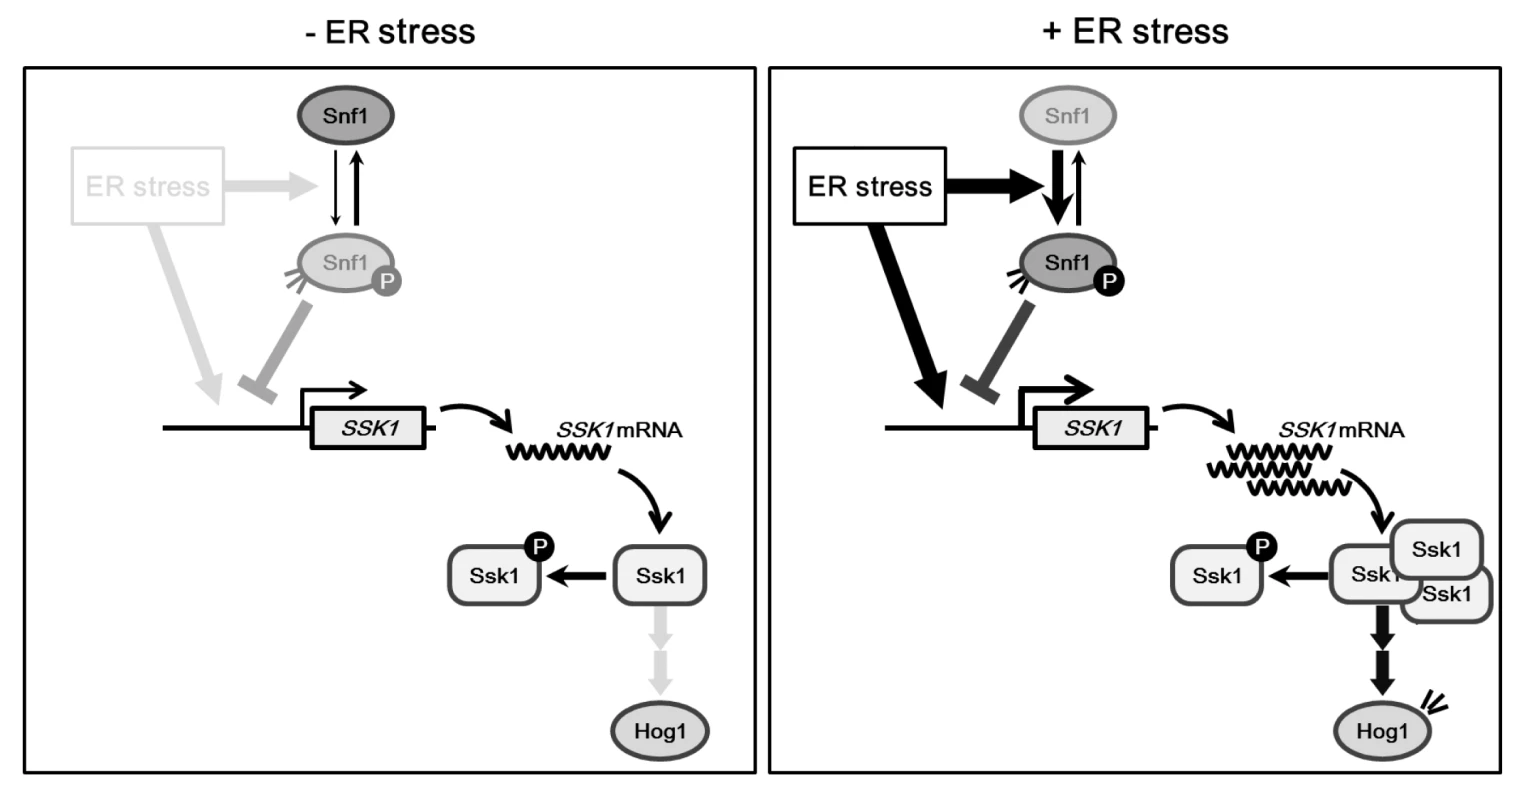 Proposed model for Snf1-mediated Hog1 regulation in ER stress response.